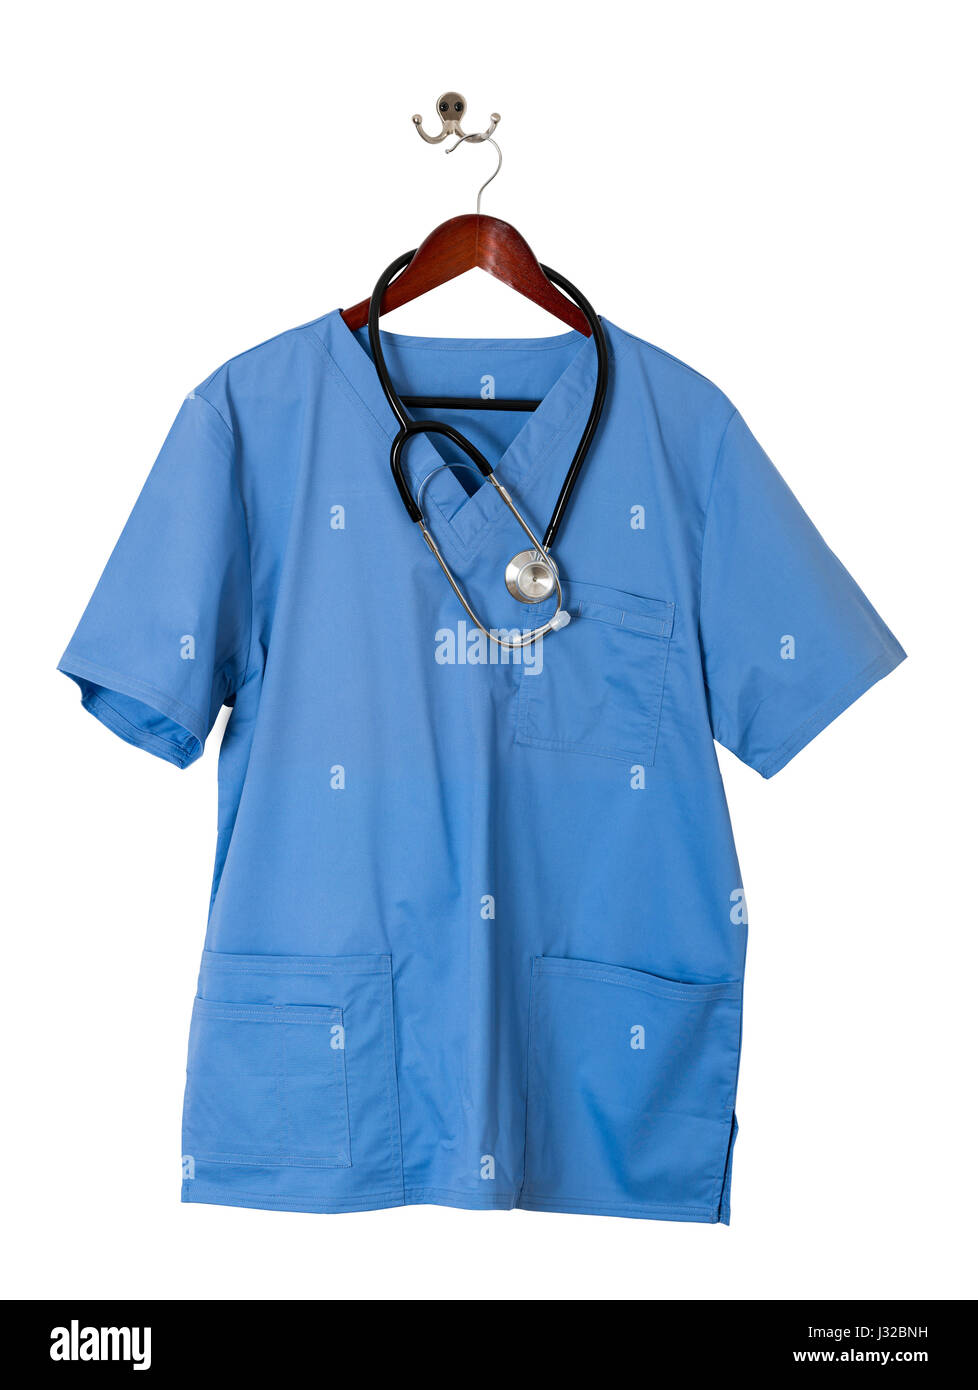 Blau medica Arzt scrubs einheitliche T-Shirt mit Stethoskop Stockfoto